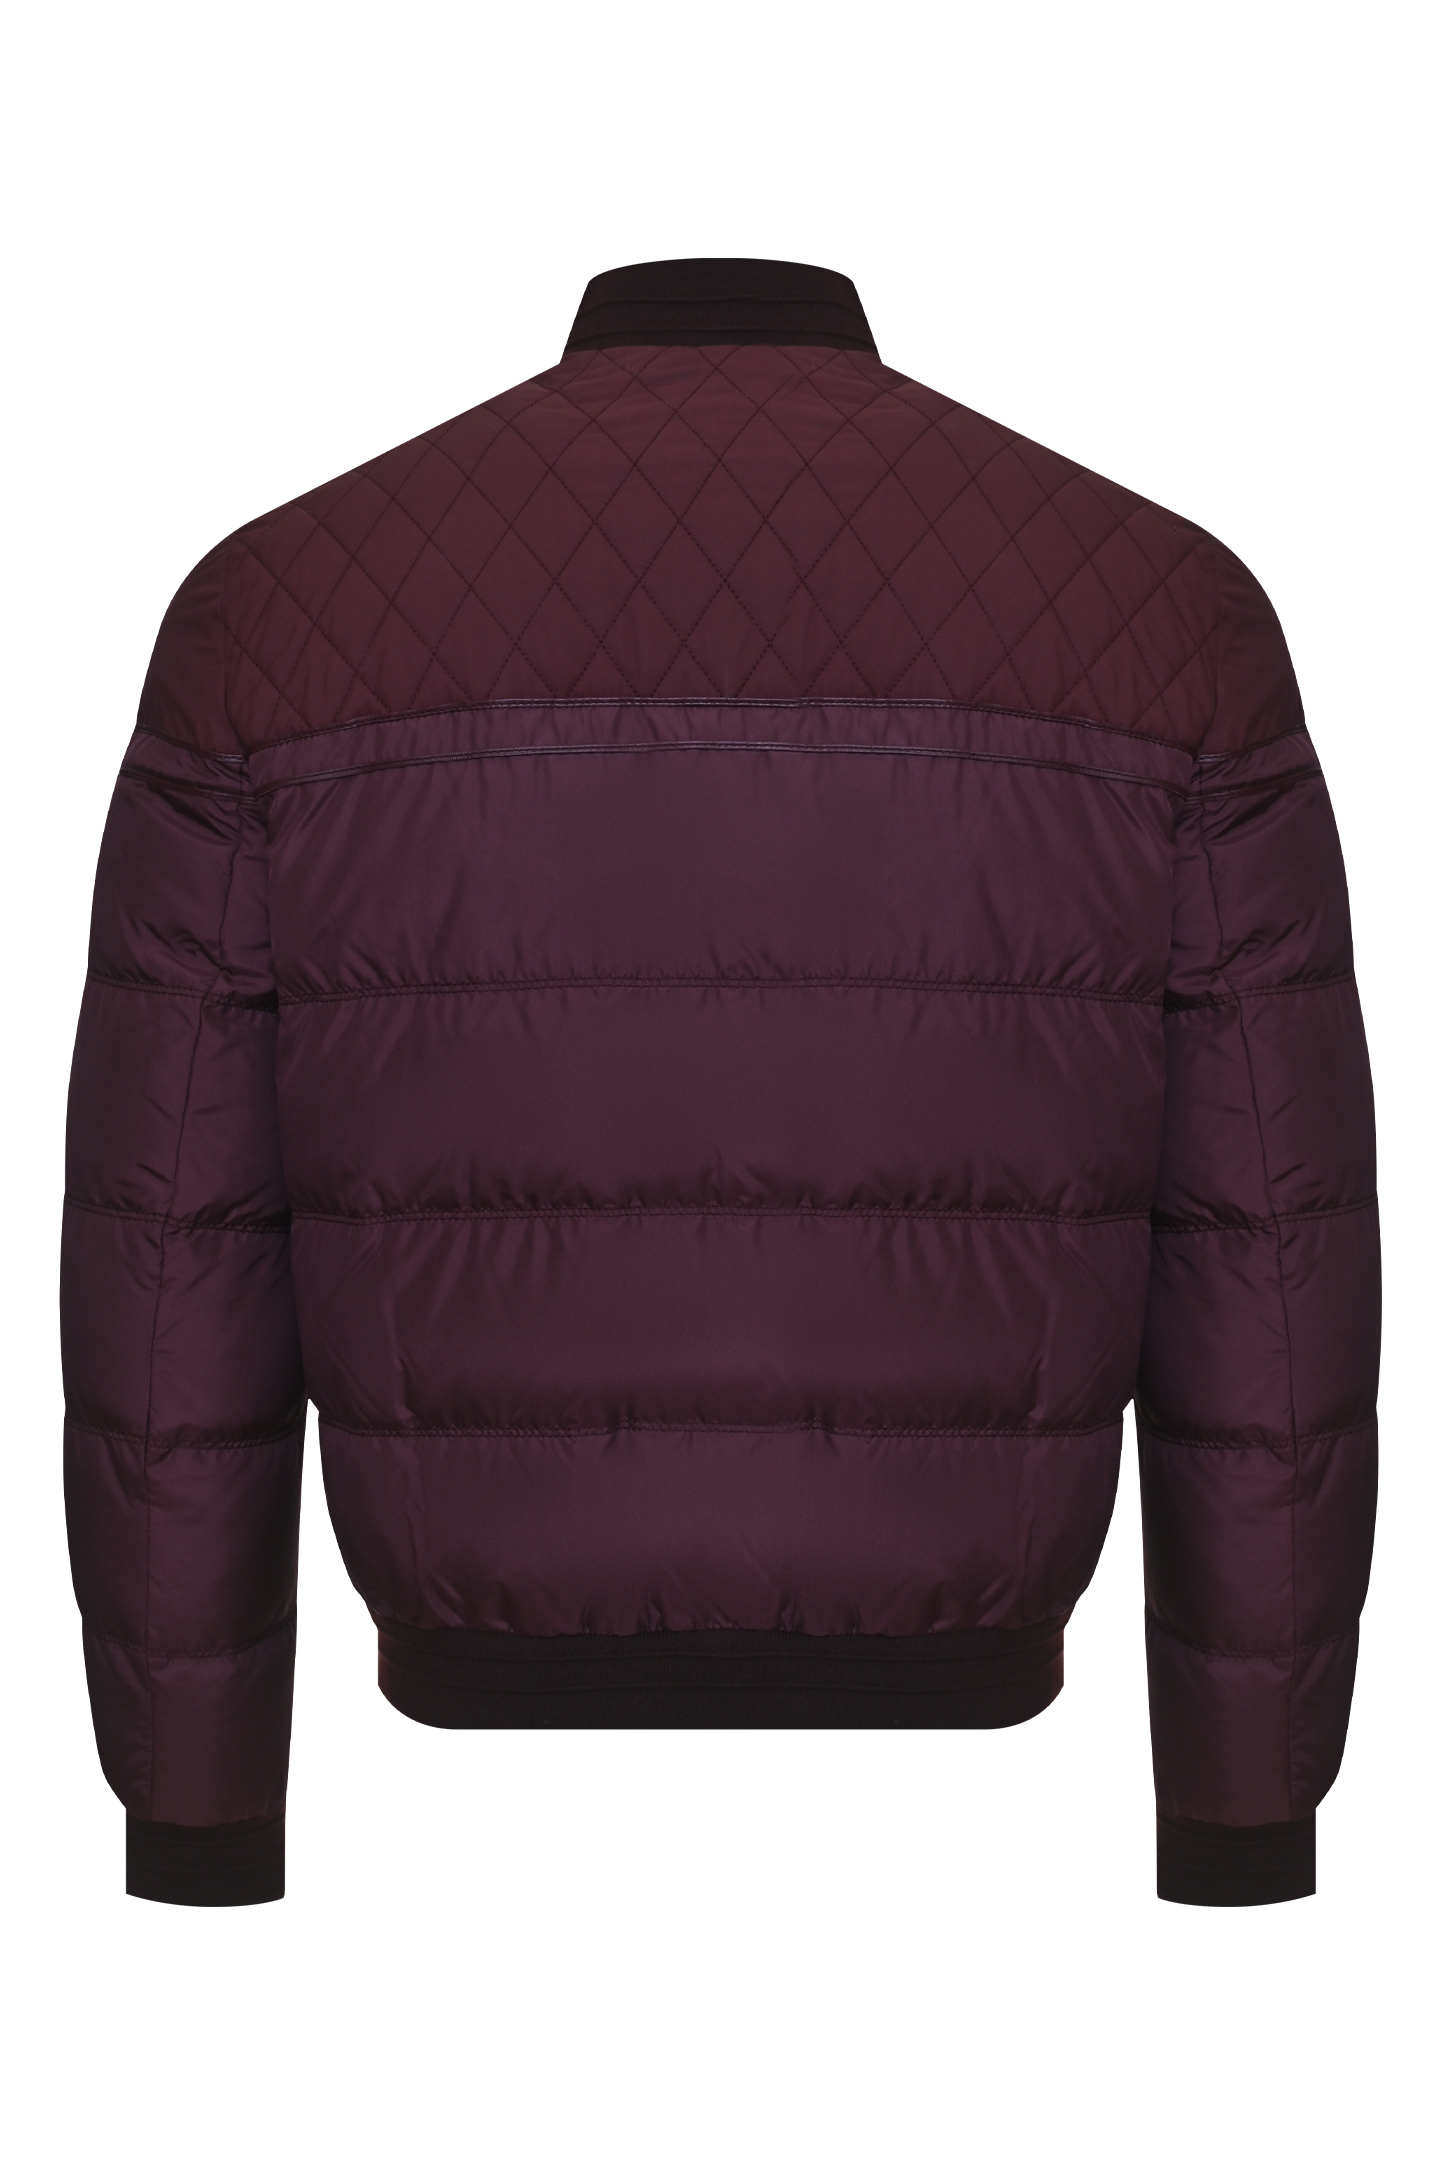 Куртка STEFANO RICCI MZJ9300050 SEREC1, цвет: Бордовый, Мужской